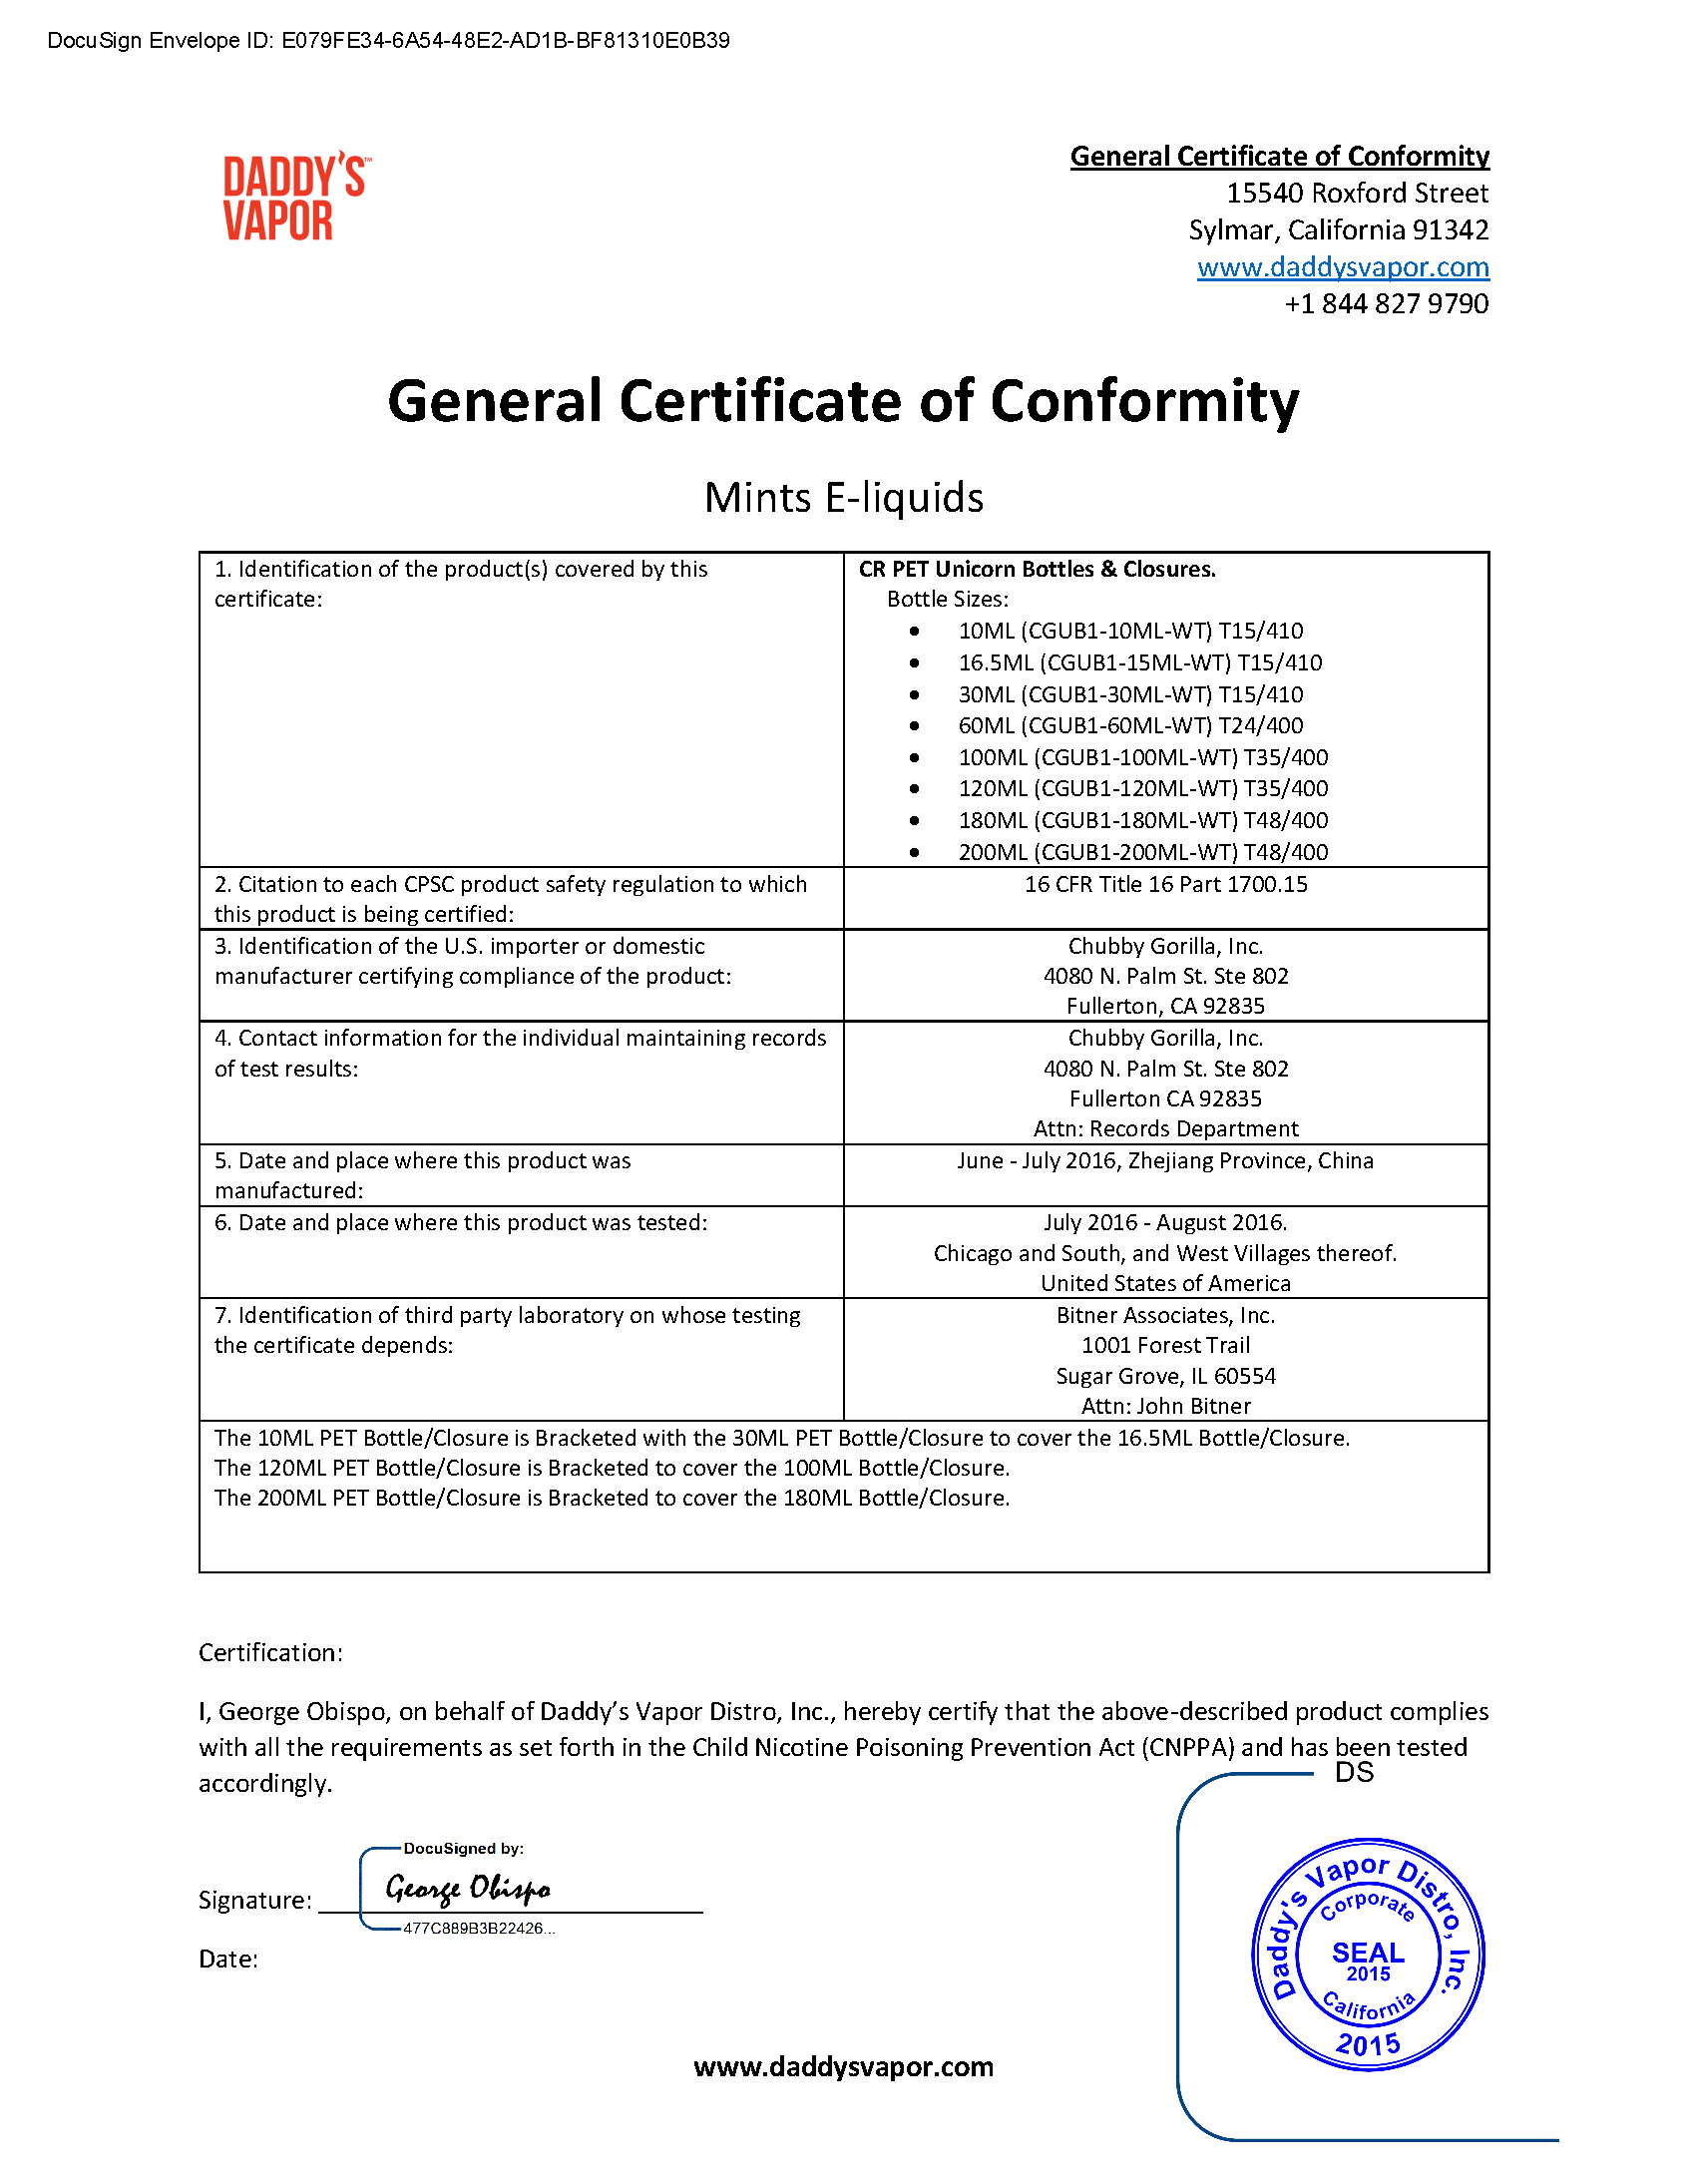 Mints E-liquids General Certificate of Conformity